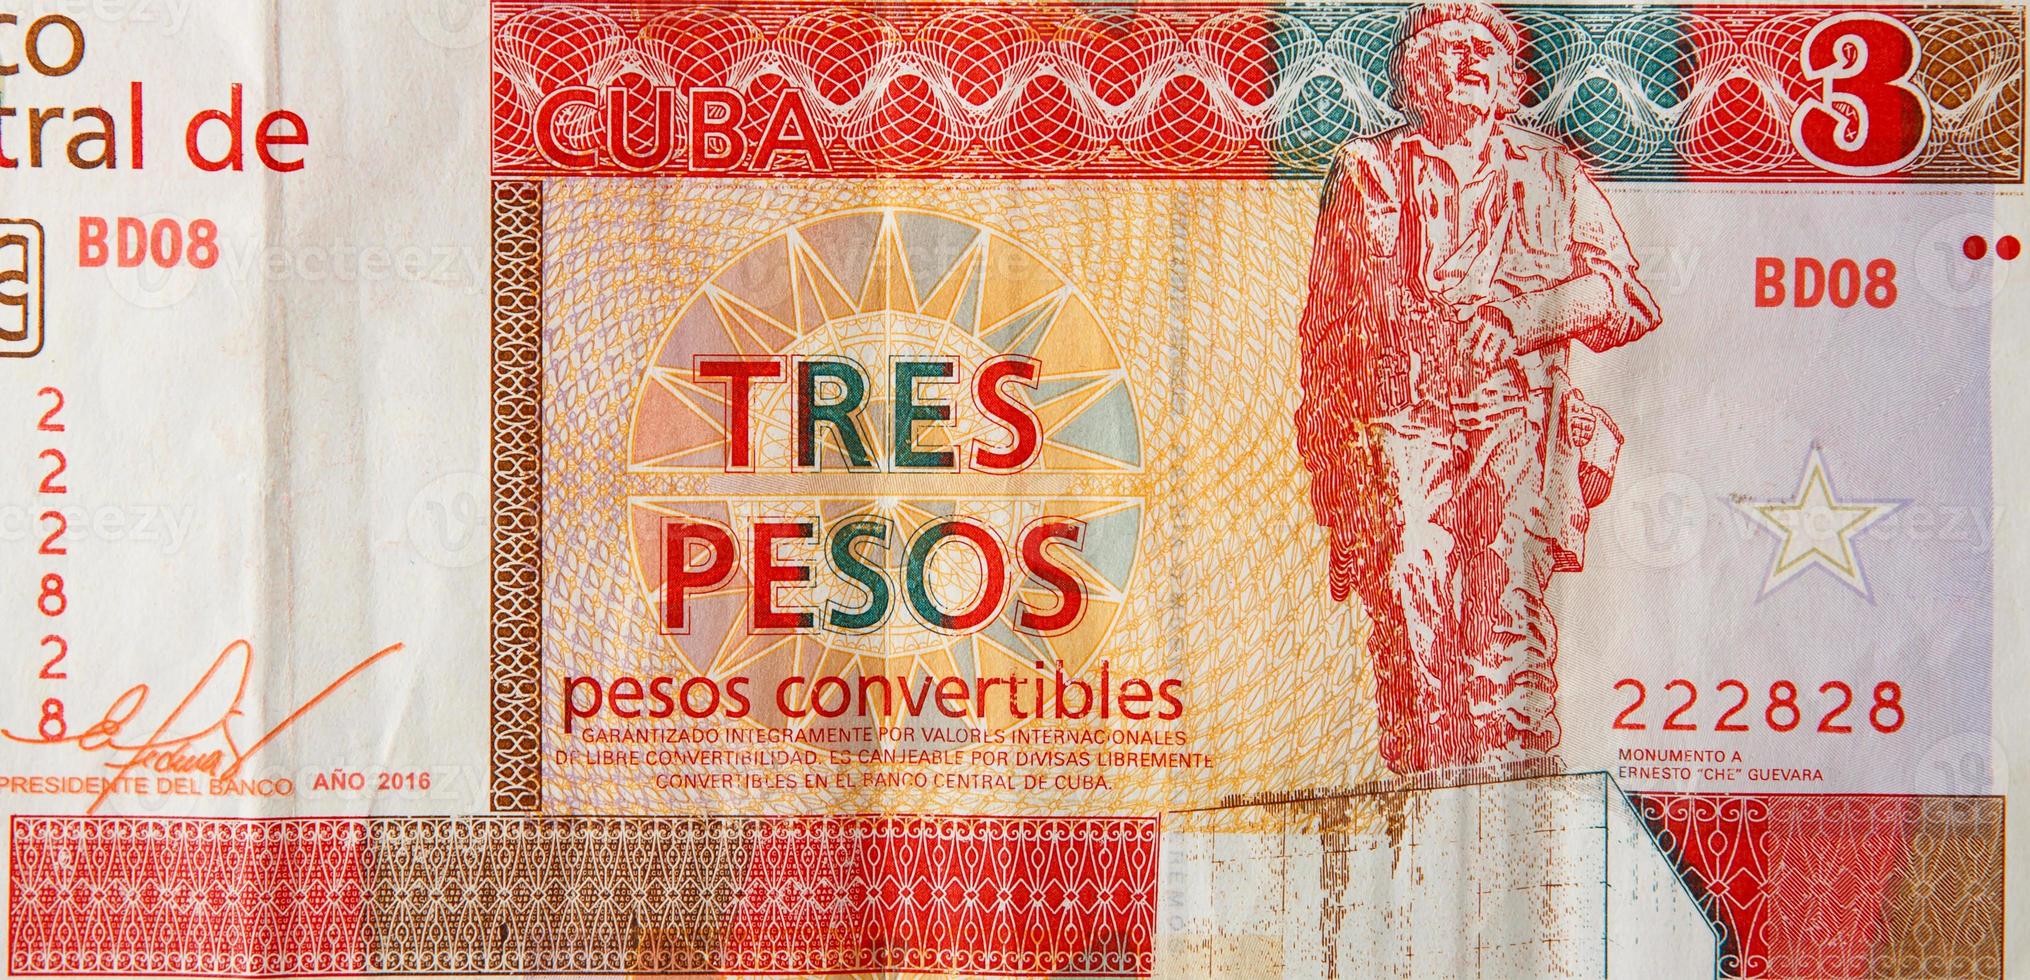 che guevara monumento su cubano banconota di arancia tre pesos convertibili 2016 foto